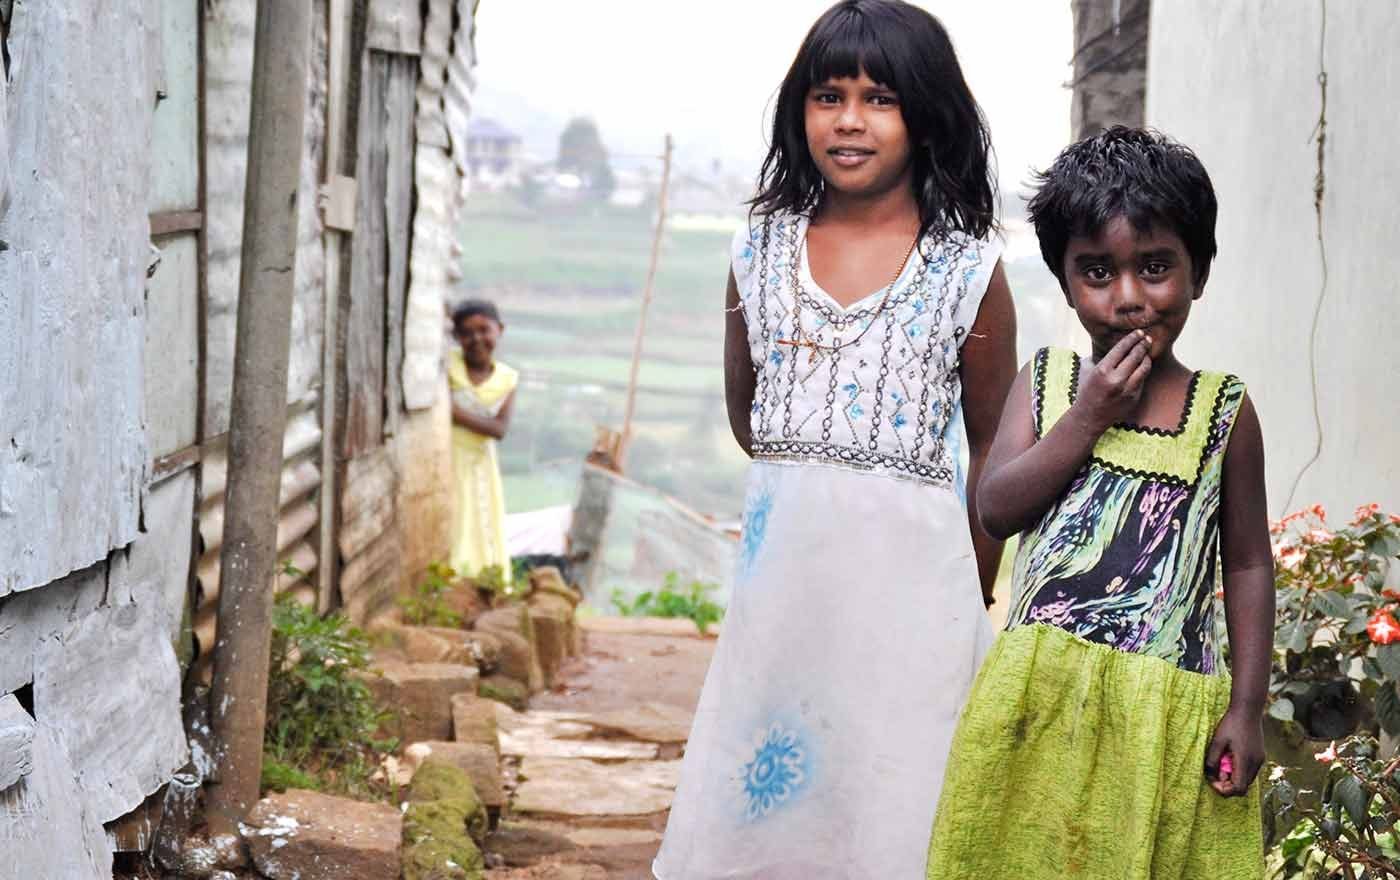 In Sri Lanka werden häufig Kinder als Arbeitskräfte auf Teeplantagen eingesetzt, da sie weniger bezahlt bekommen als Erwachsene. Gemeinsam mit dem Projektpartner ELWF will die Kindernothilfe 350 von ihnen eine Ausbildung ermöglichen. Foto: Kindernothilfe